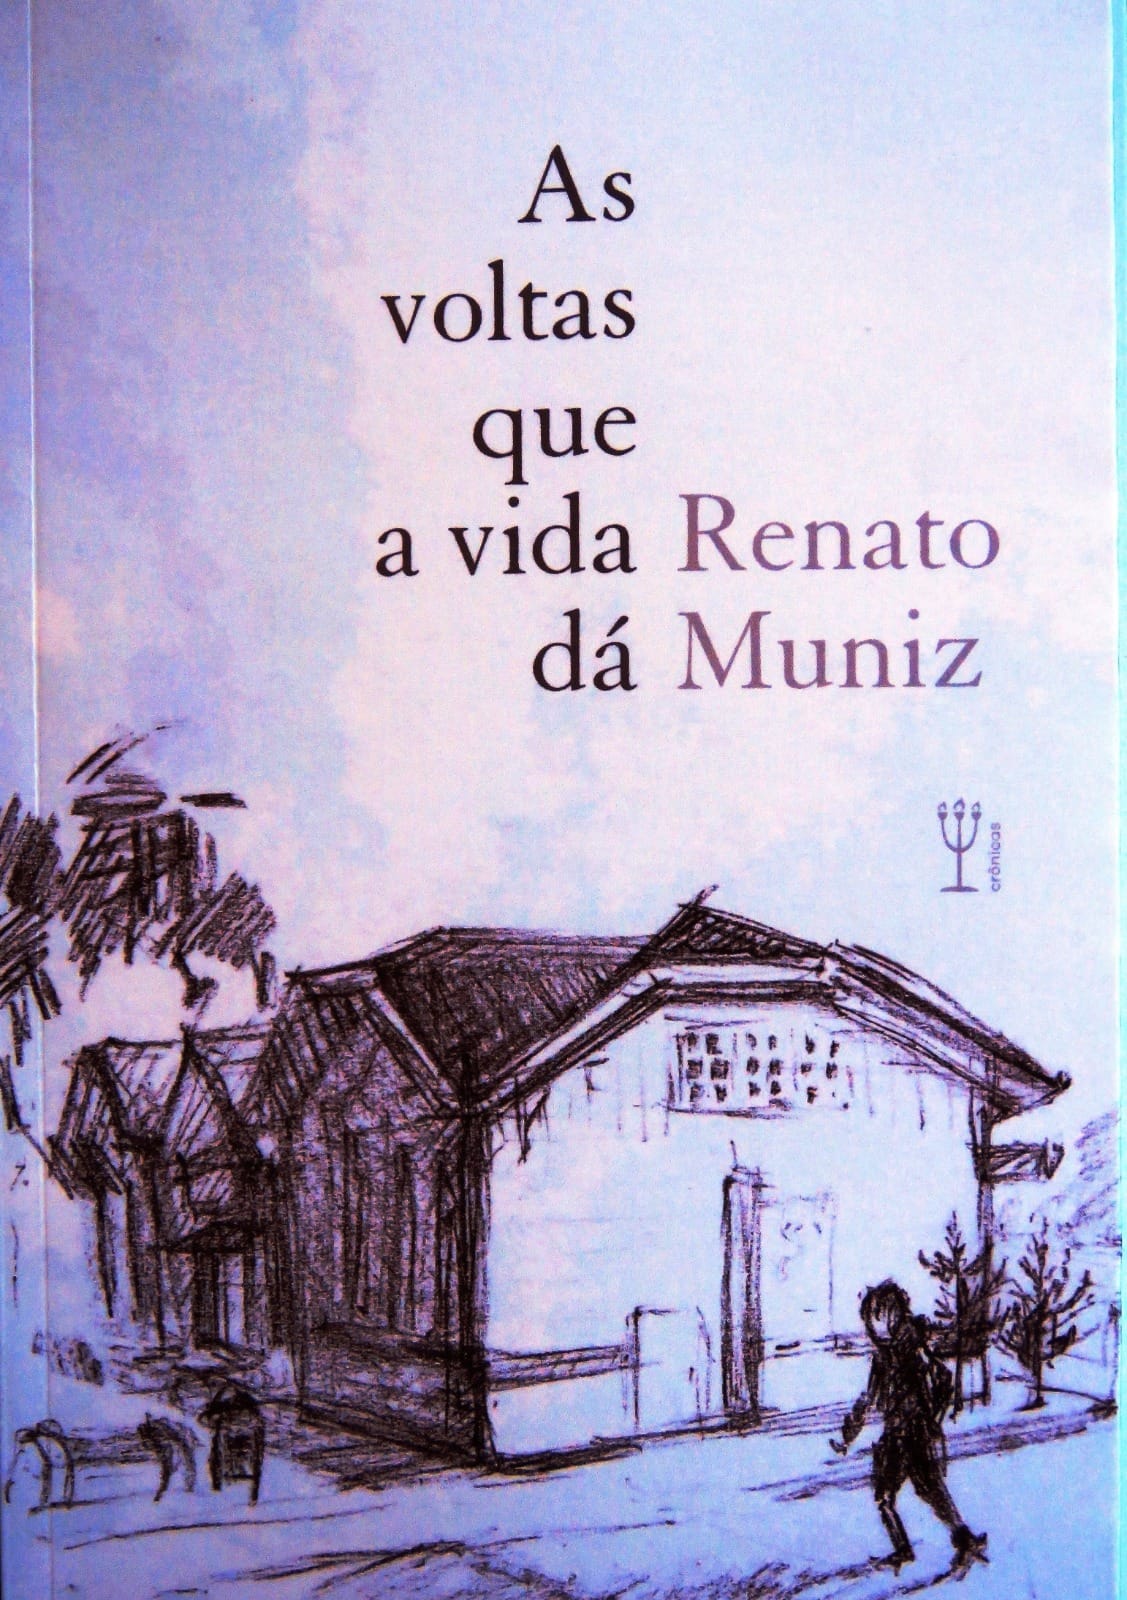 Renata Muniz as voltas que a vida dá penalux - Fernando Andrade entrevista o escritor Renato Muniz